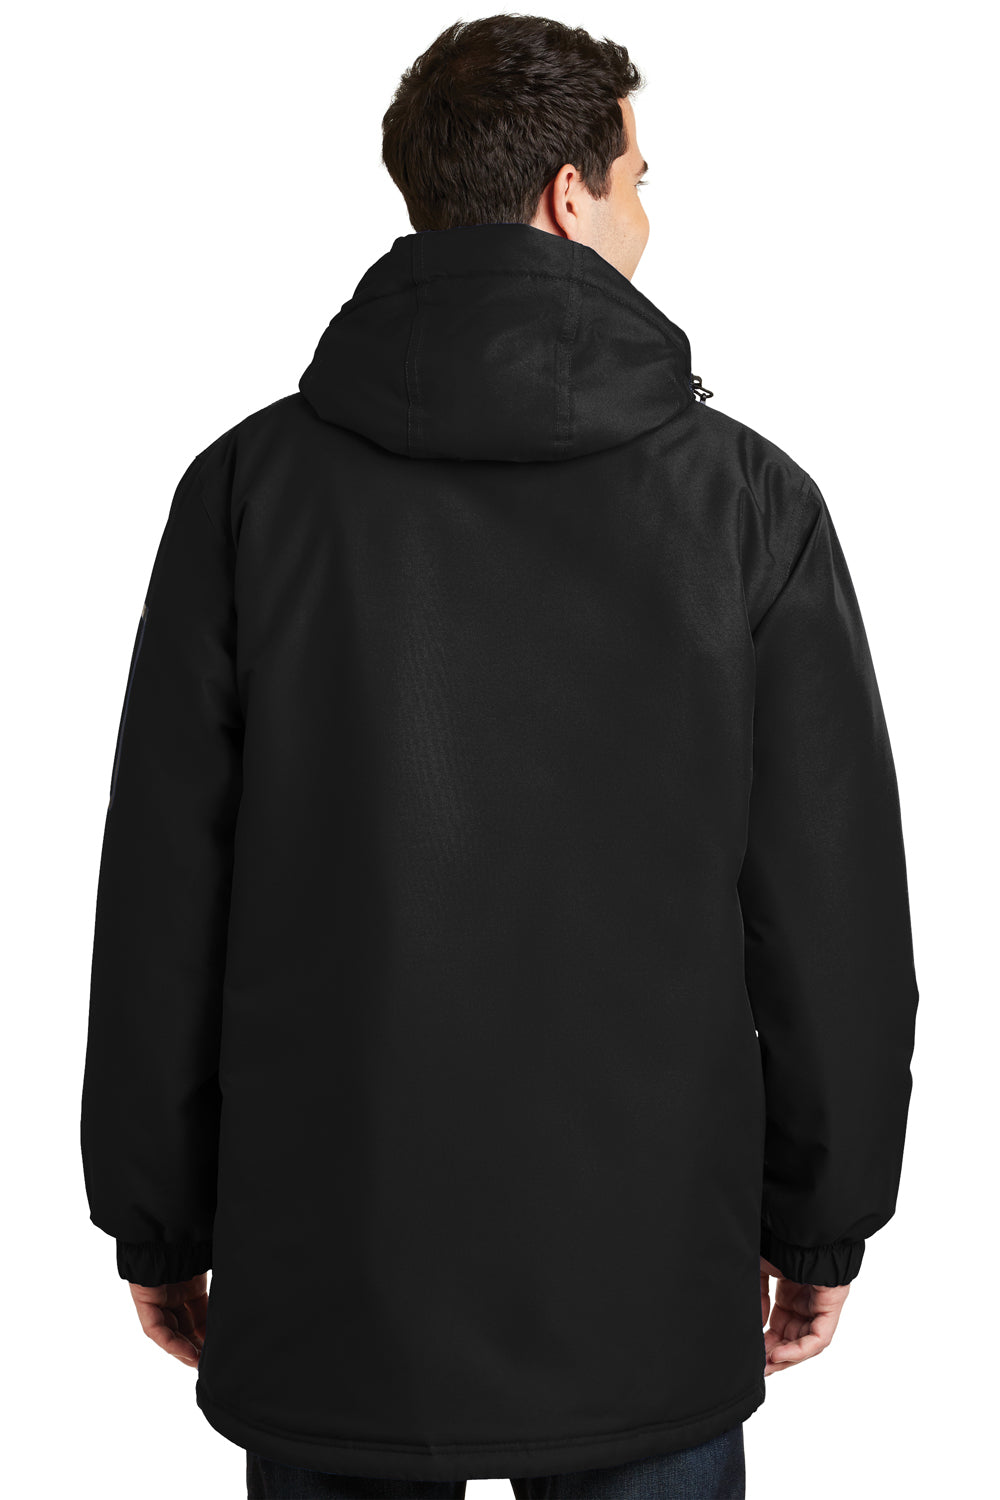 Port Authority J799 Mens Waterproof Full Zip Hooded Jacket Black Back